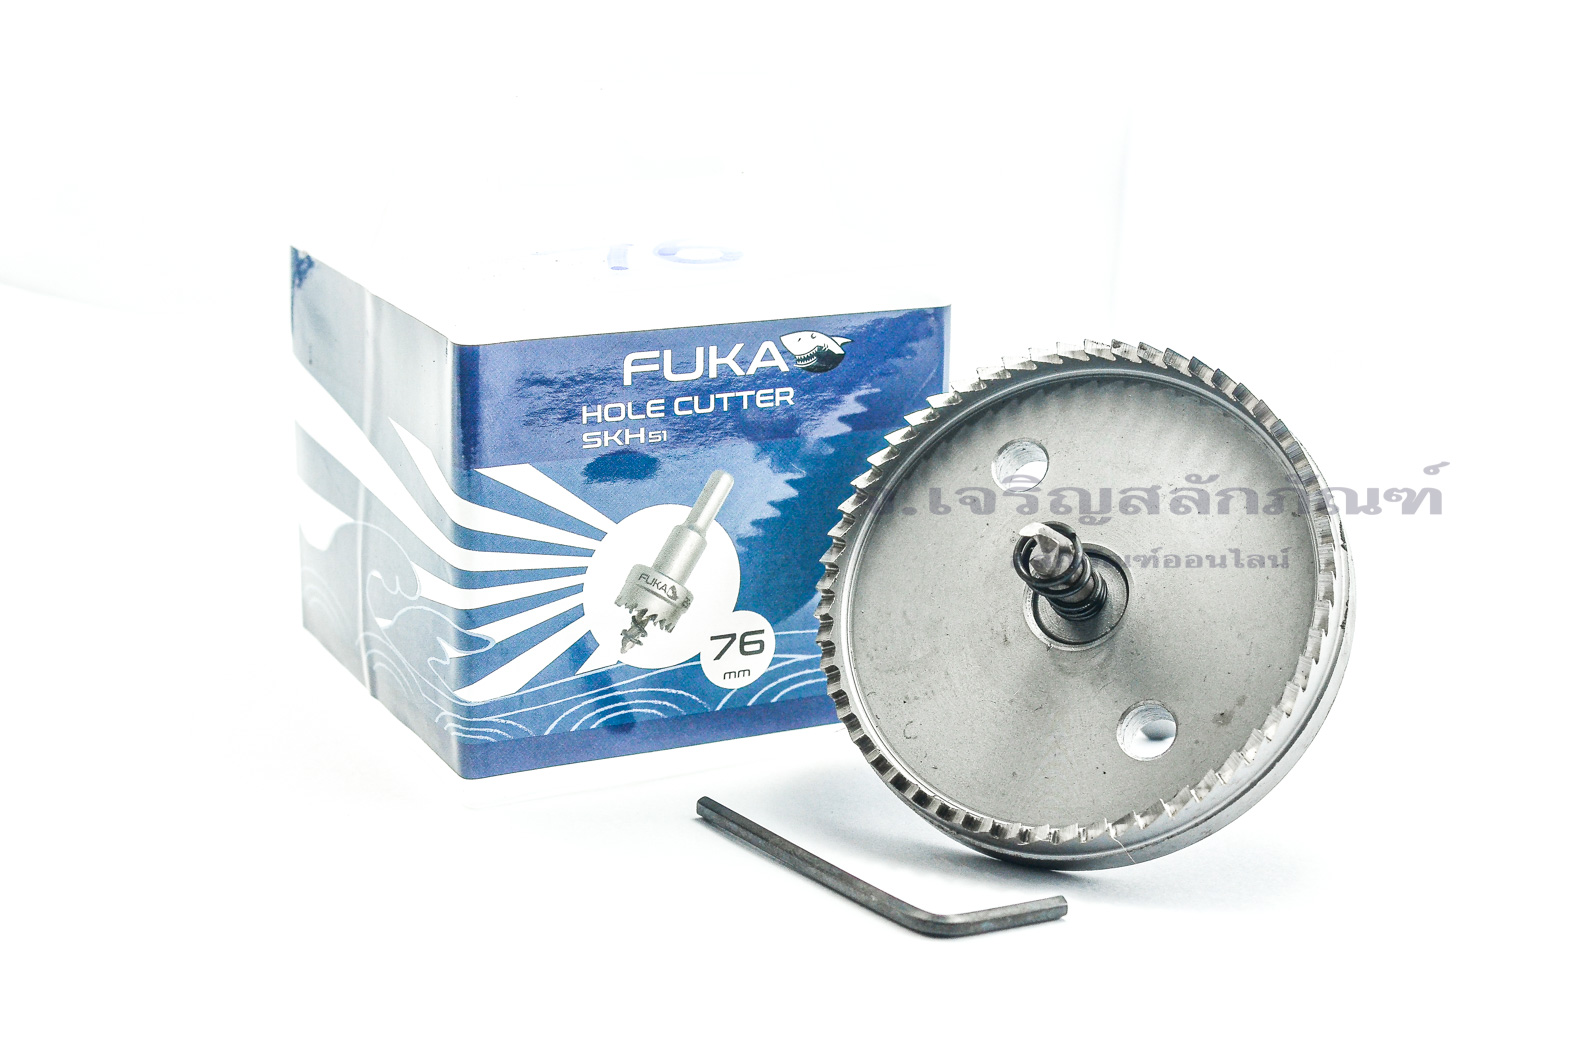 โฮลซอว์เจาะเหล็ก FUKA ทำรูขนาด 64 - 76 mm เหมาะสำหรับเจาะอลูมิเนียม ทองคำ ไม้ High Speed Steel (HSS) Hole Saw Cutter